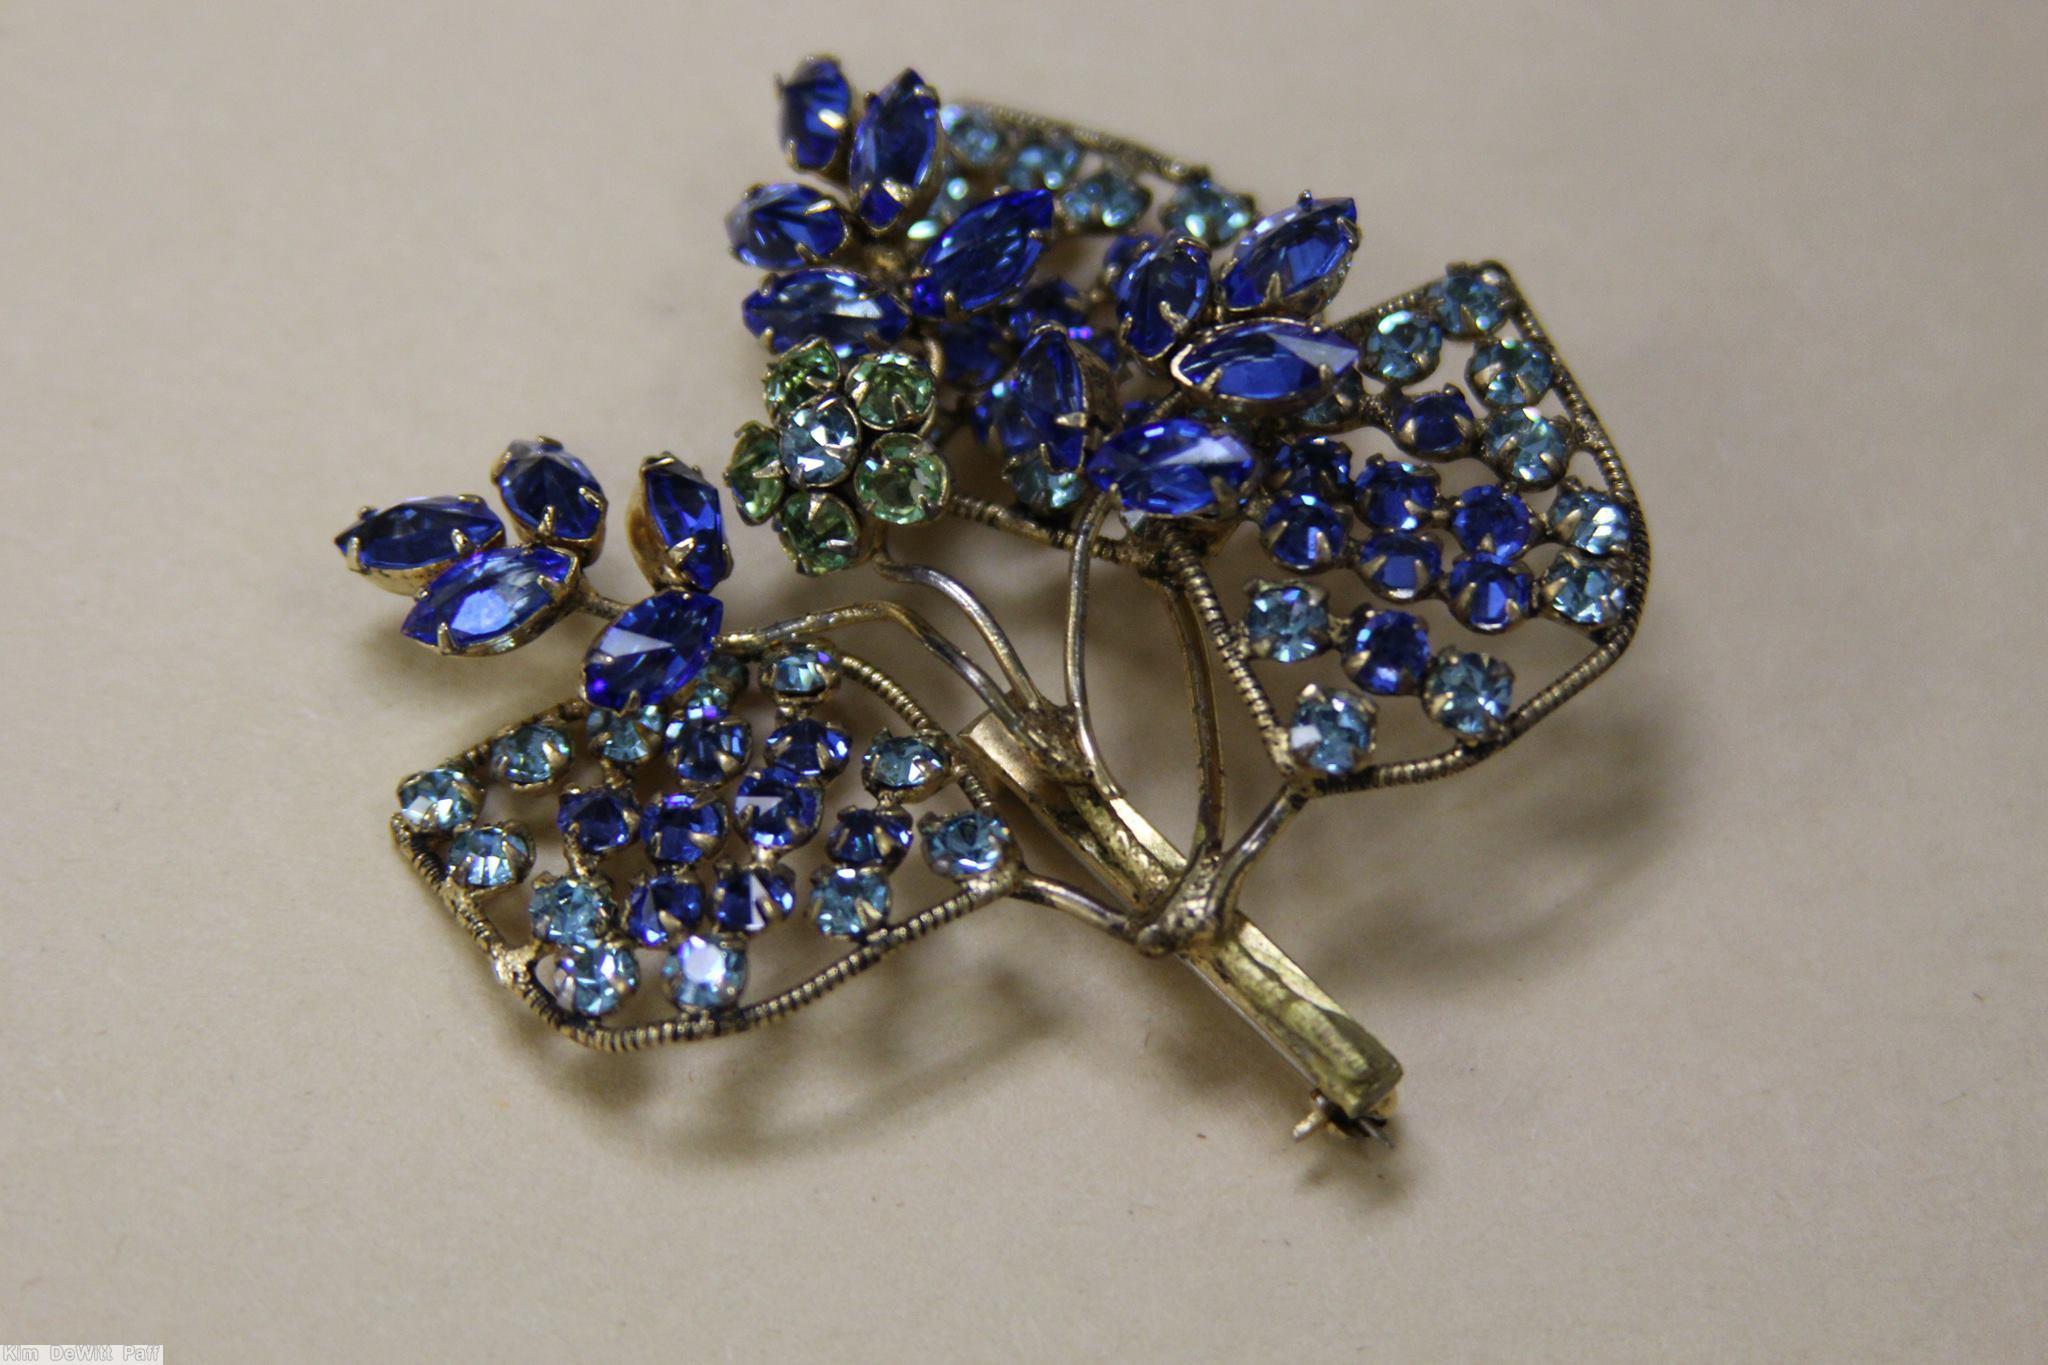 Schreiner 3 wired seeds leaf bunch pin marina blue ice blue green jewelry